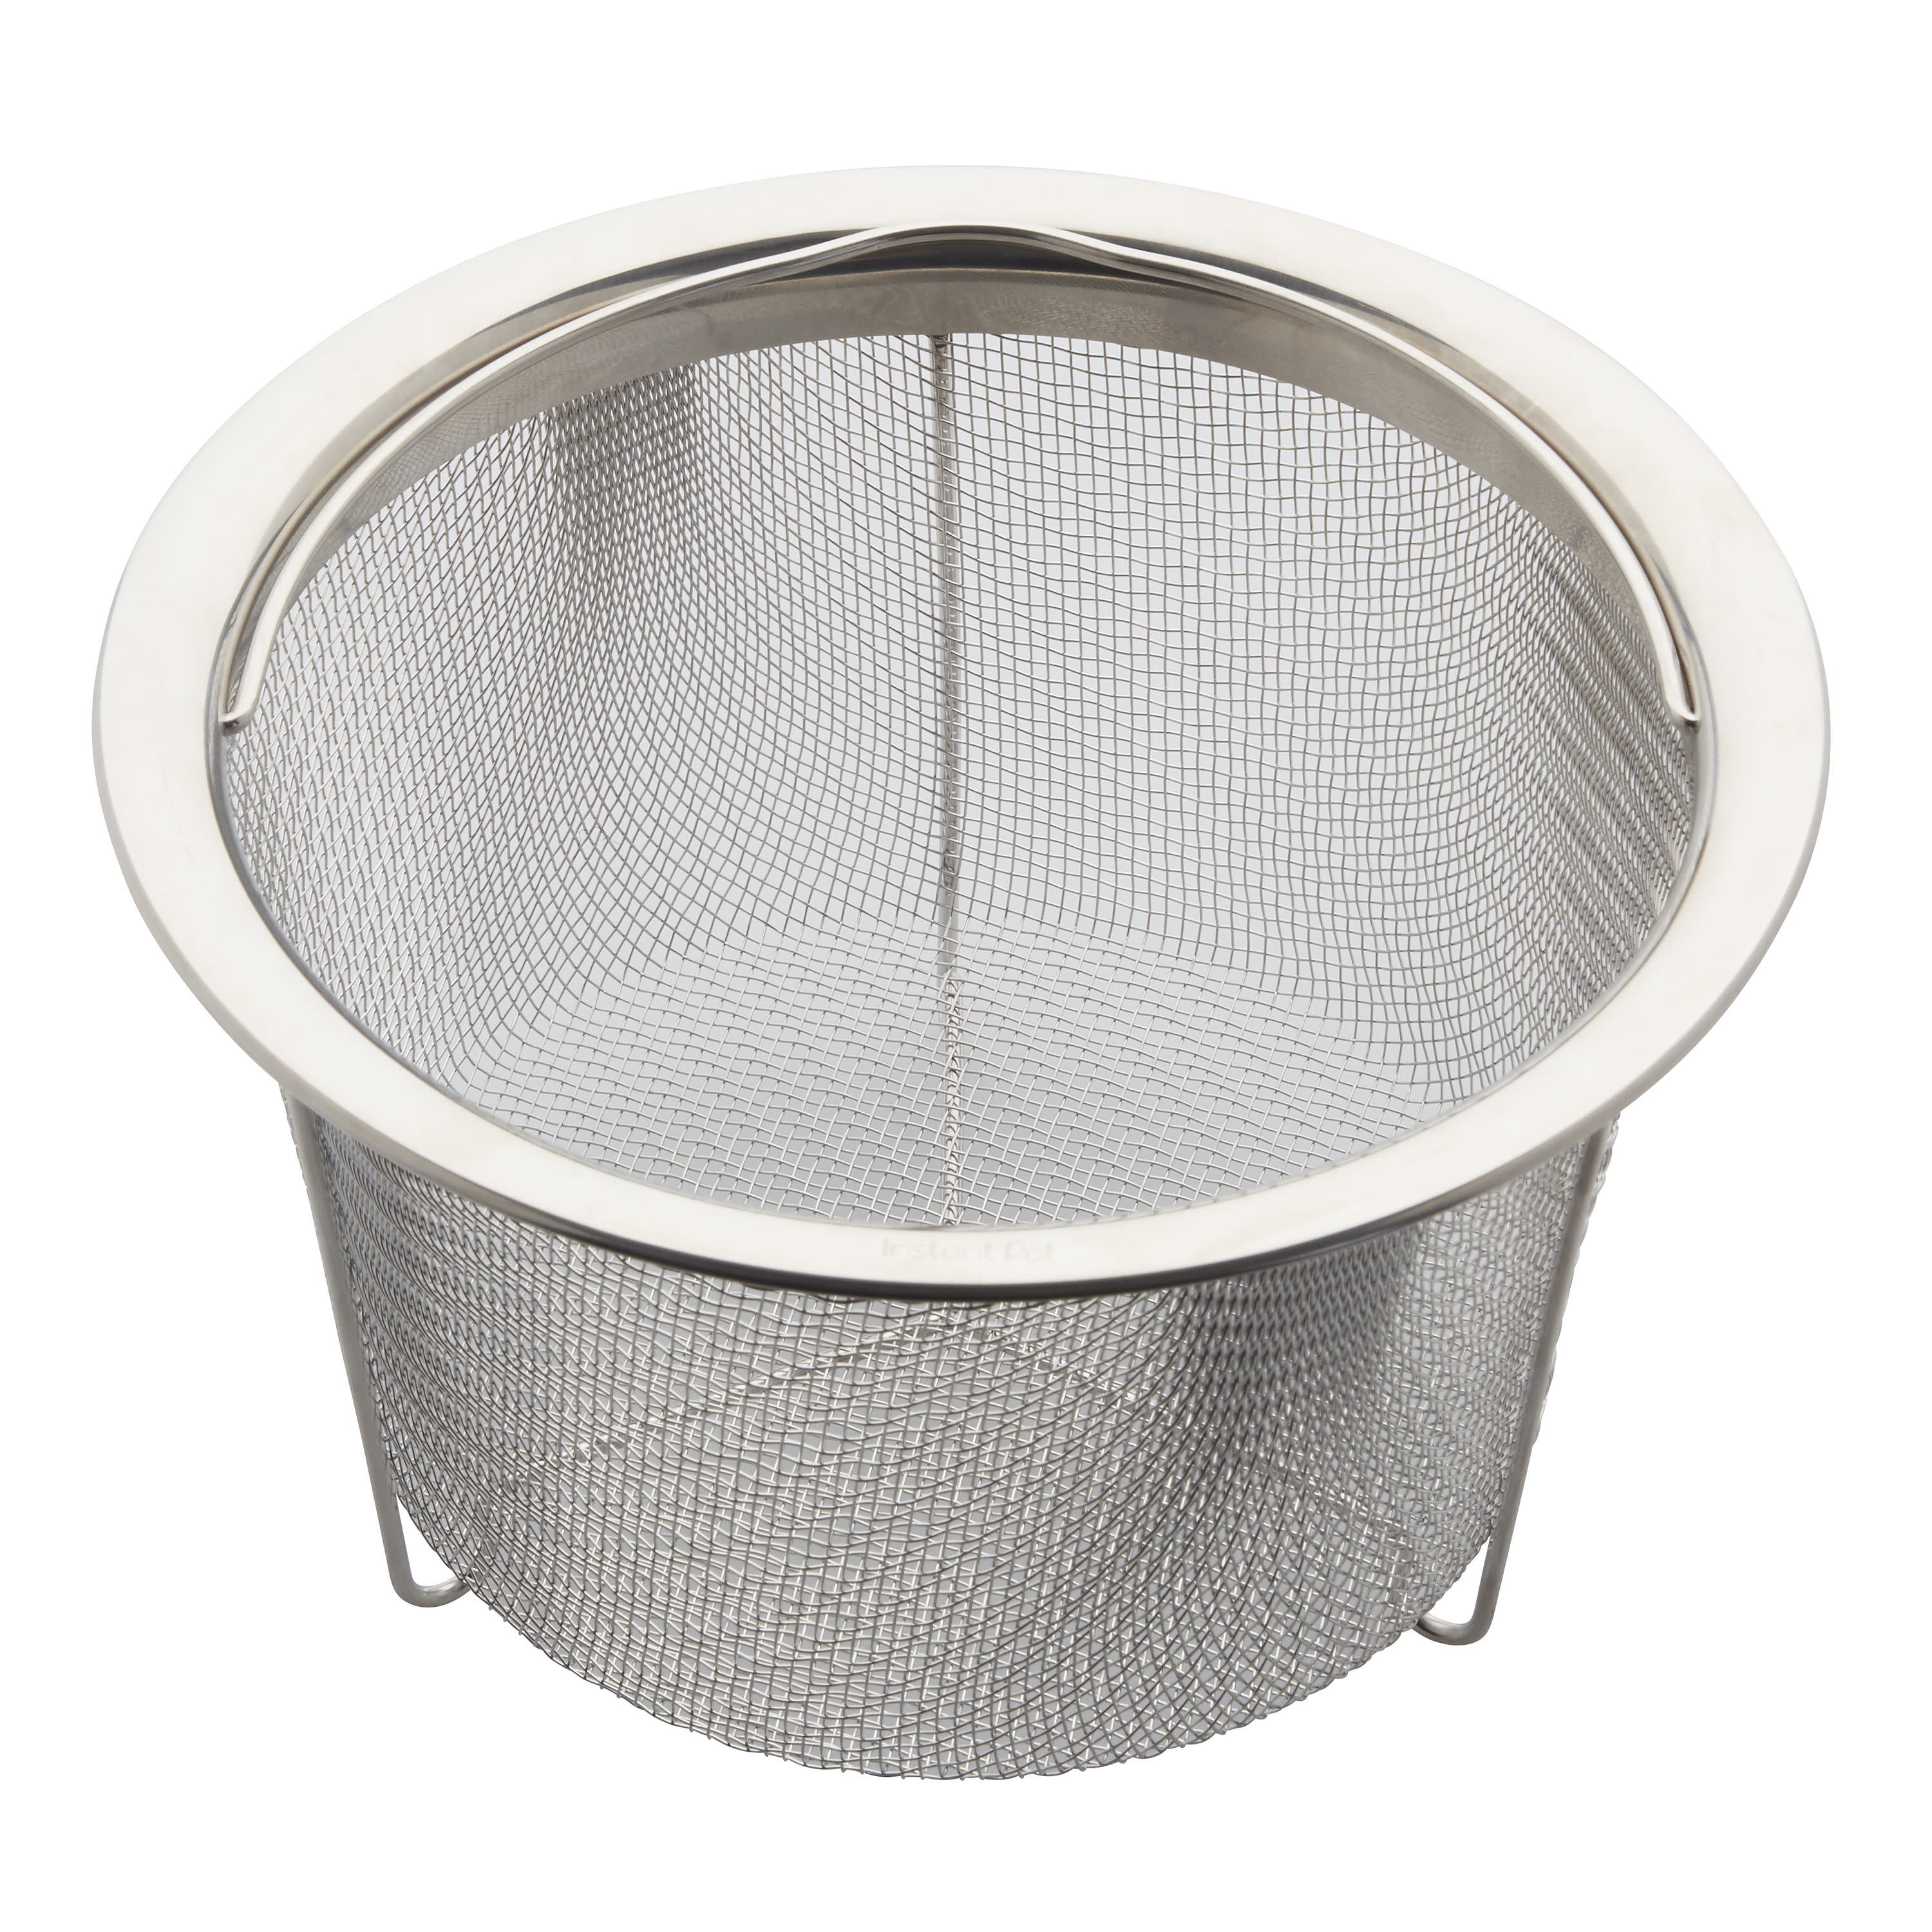 Salbree Instant Pot Steamer Basket - 8 Quart